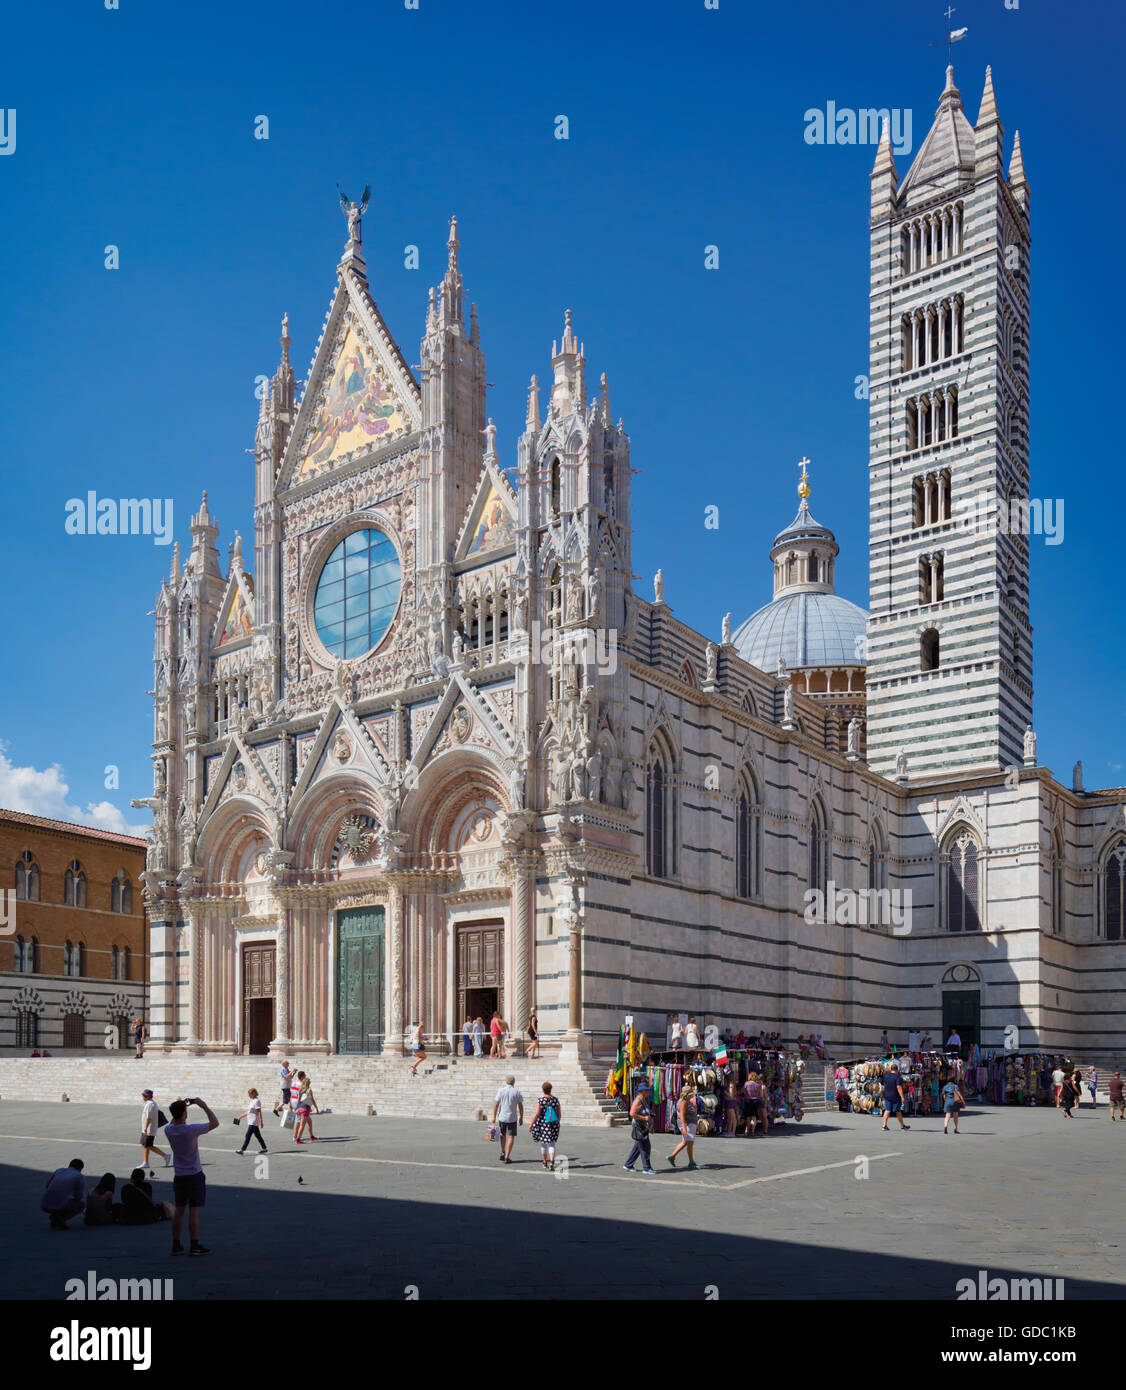 Sienne, la province de Sienne, Toscane, Italie. Le duomo, ou la cathédrale romano-gothique, construit au 13e siècle. Banque D'Images